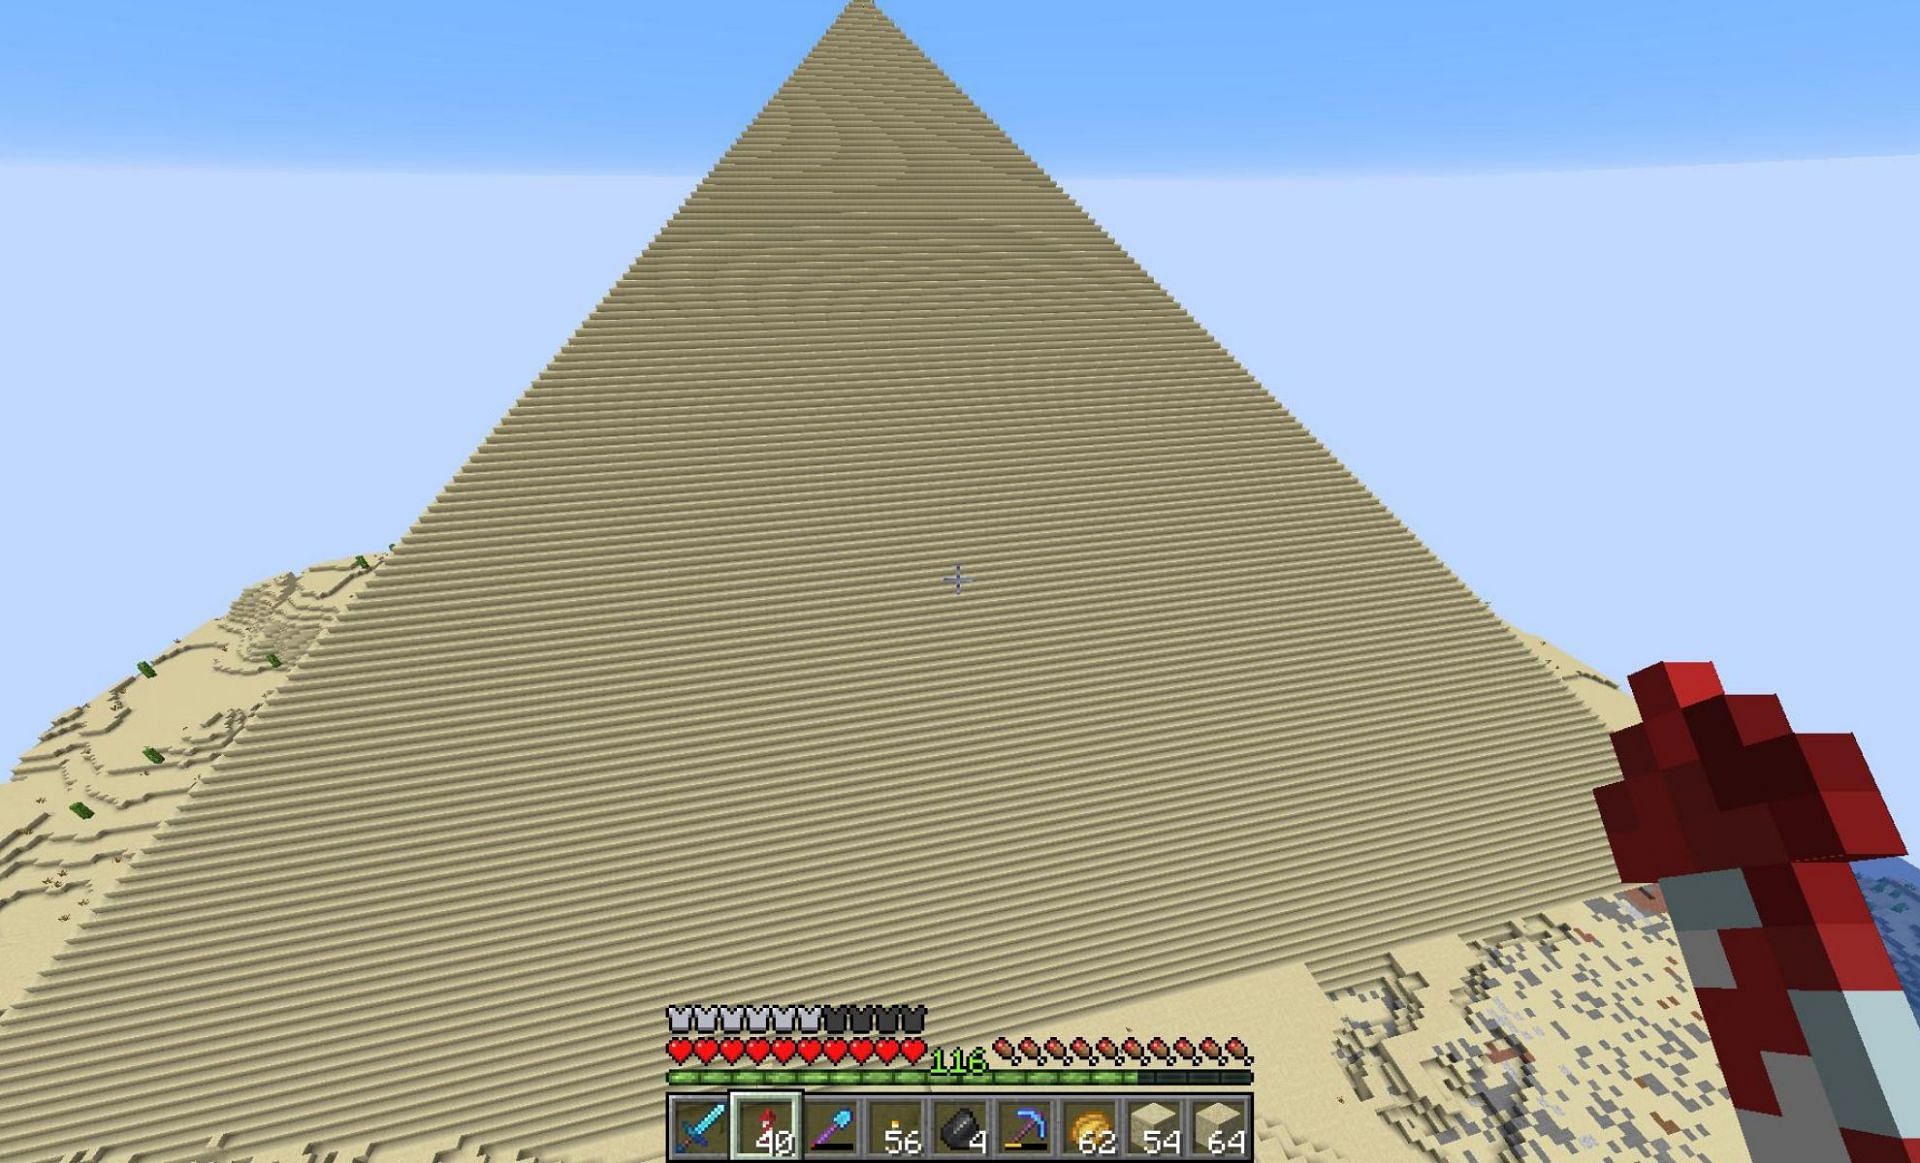 A massive pyramid (Image via u/noahisunbeatable on Reddit)